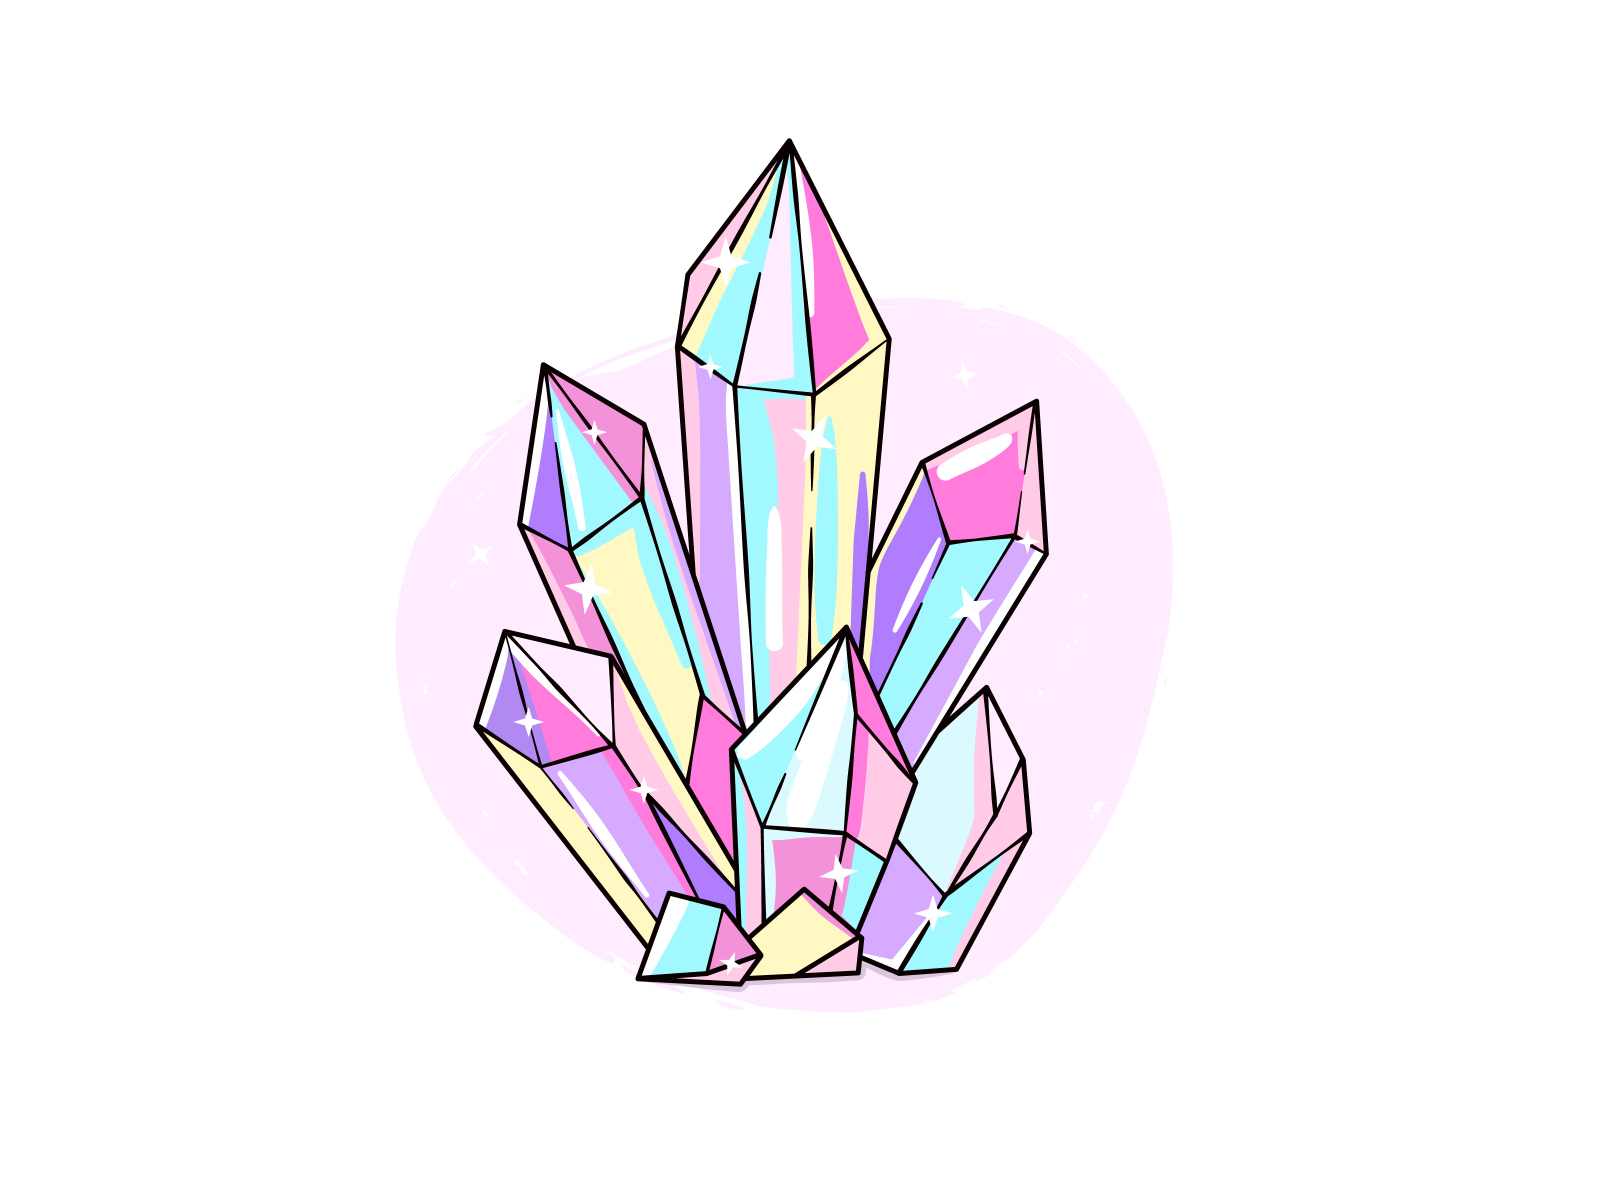 Crystals by Tatiana Kovaleva on Dribbble